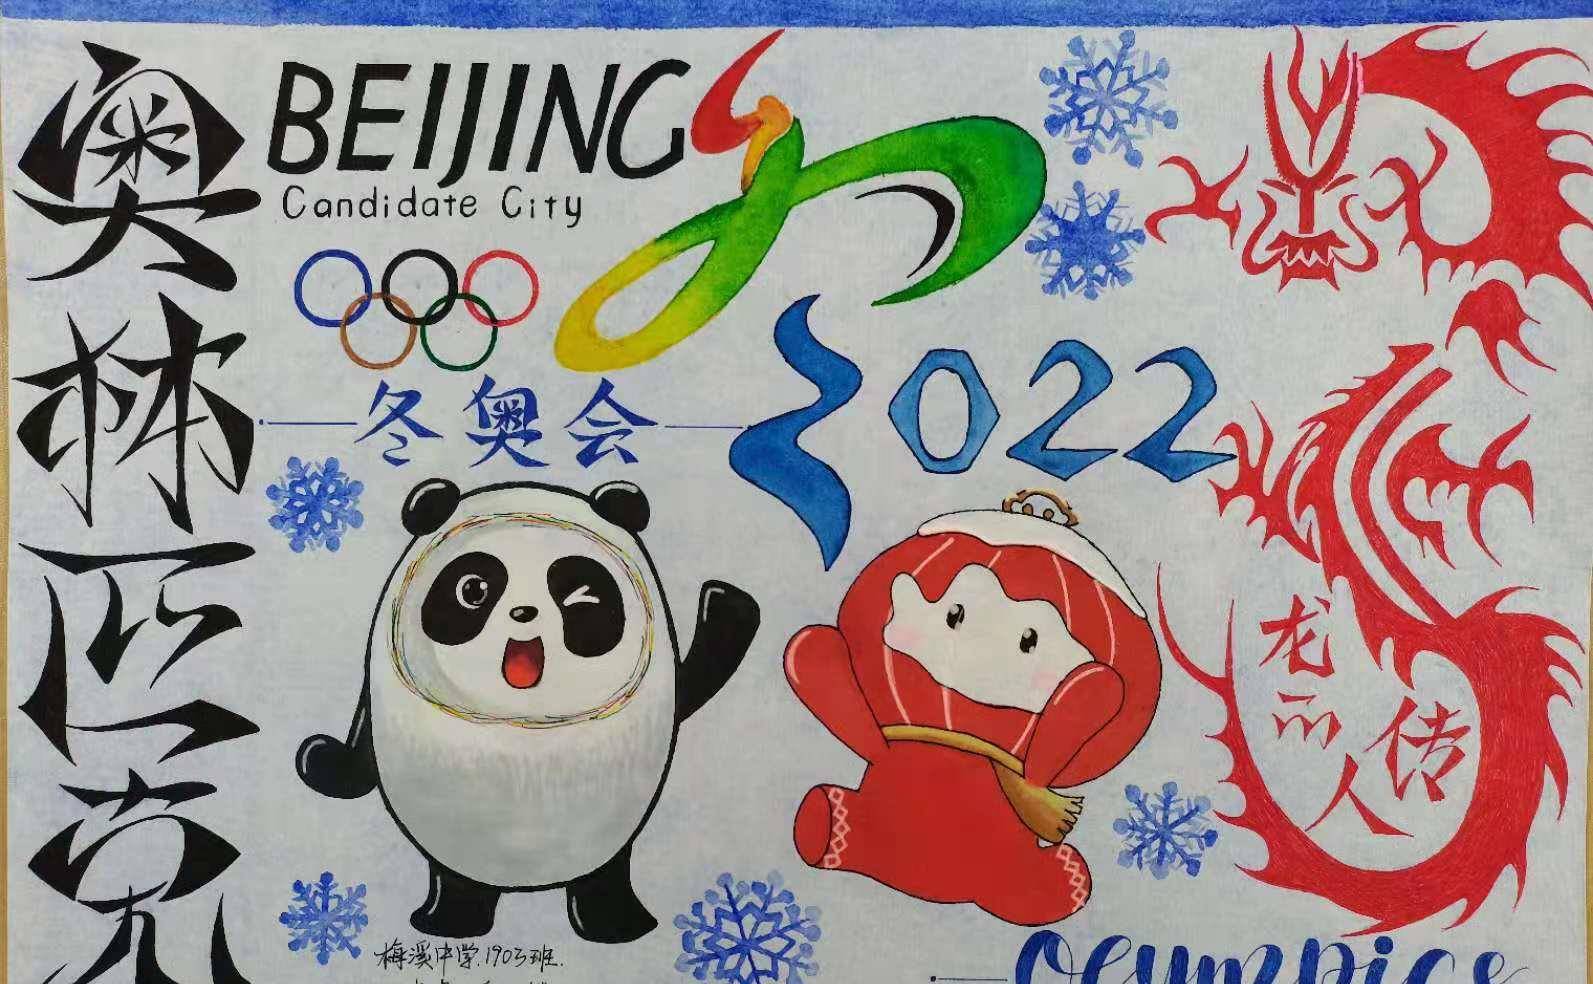 2022年北京冬季奥运会 外文名 the xxiv olympic winter games 举办